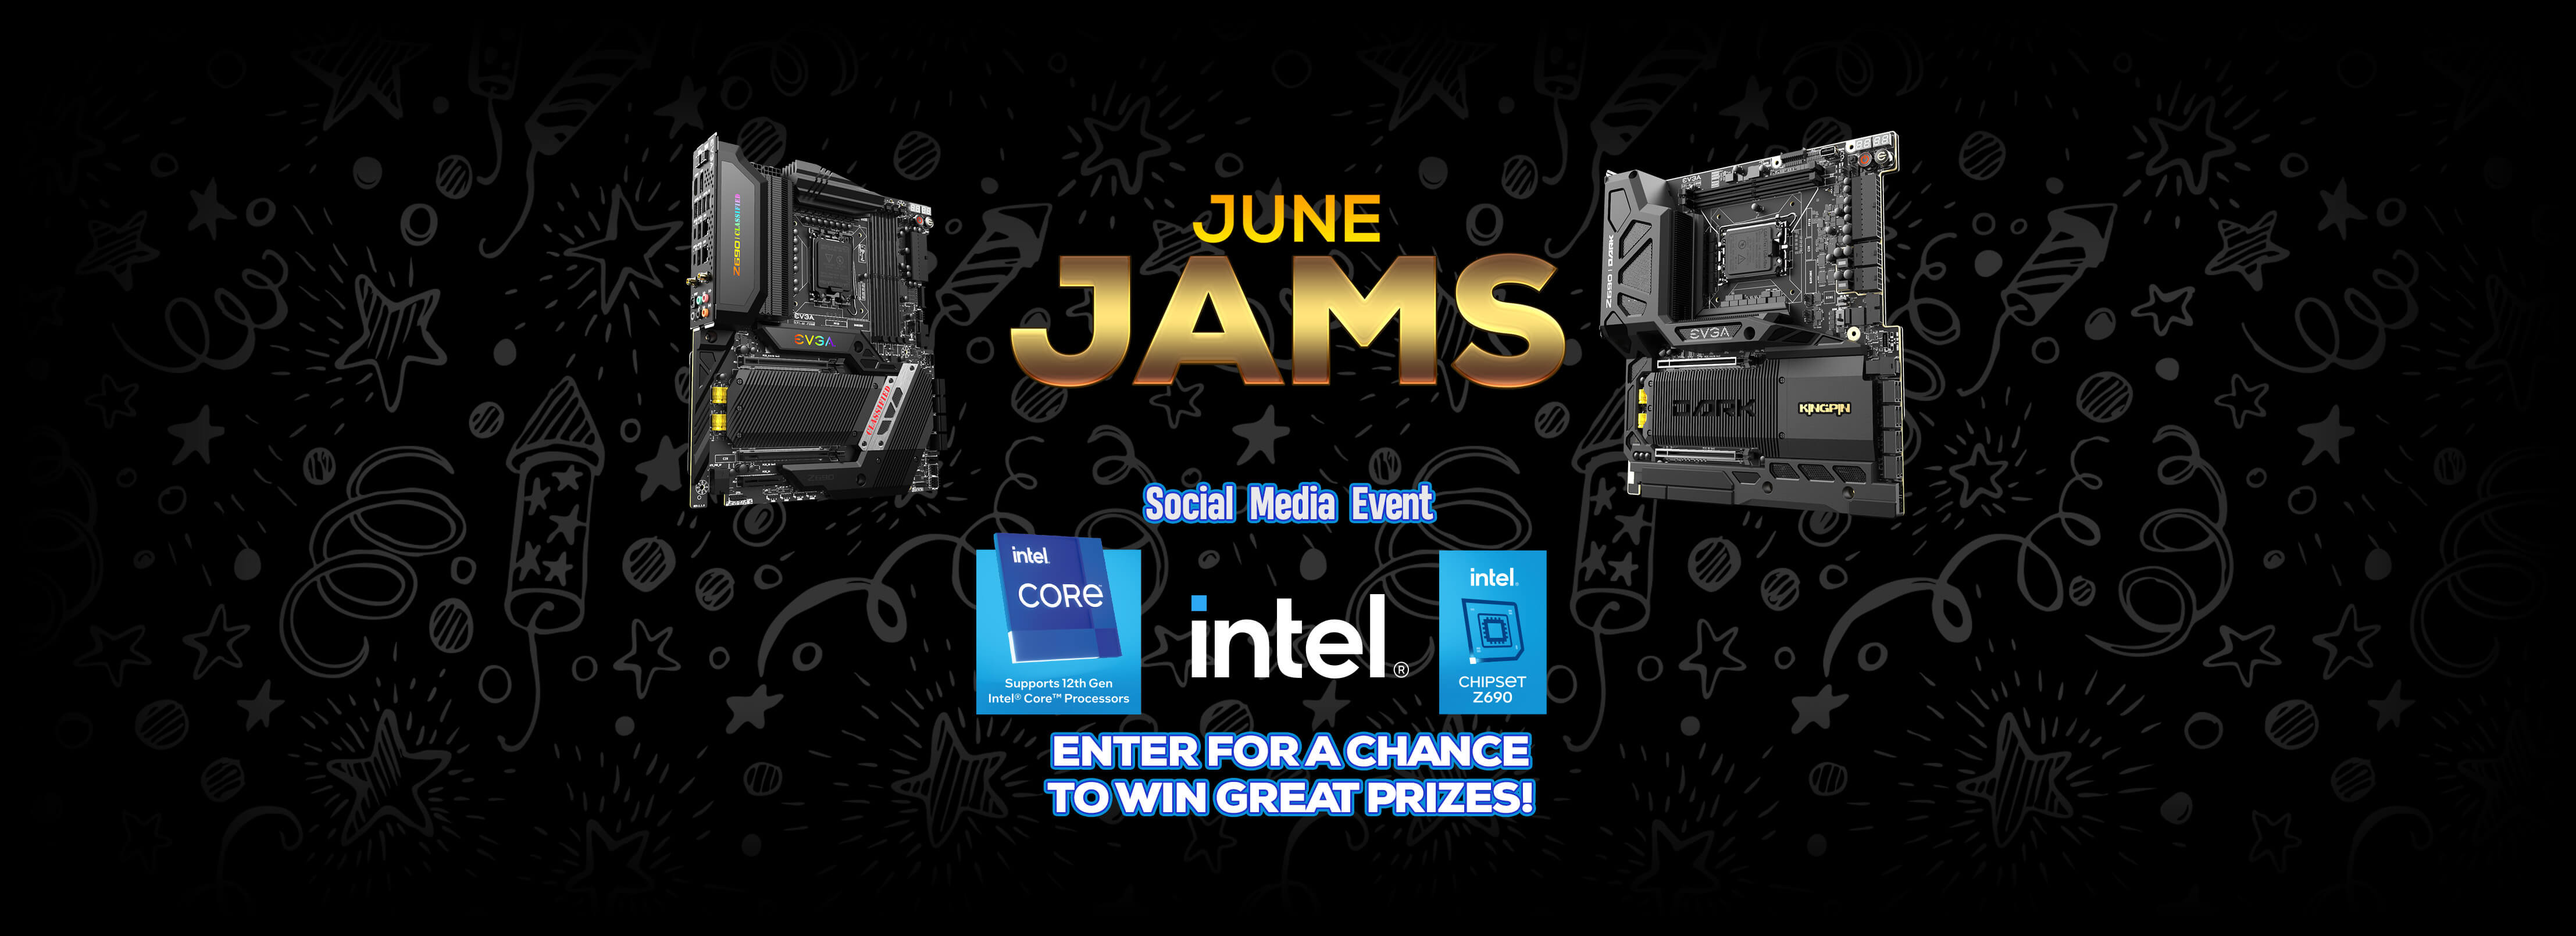 June Jams Social Media Event